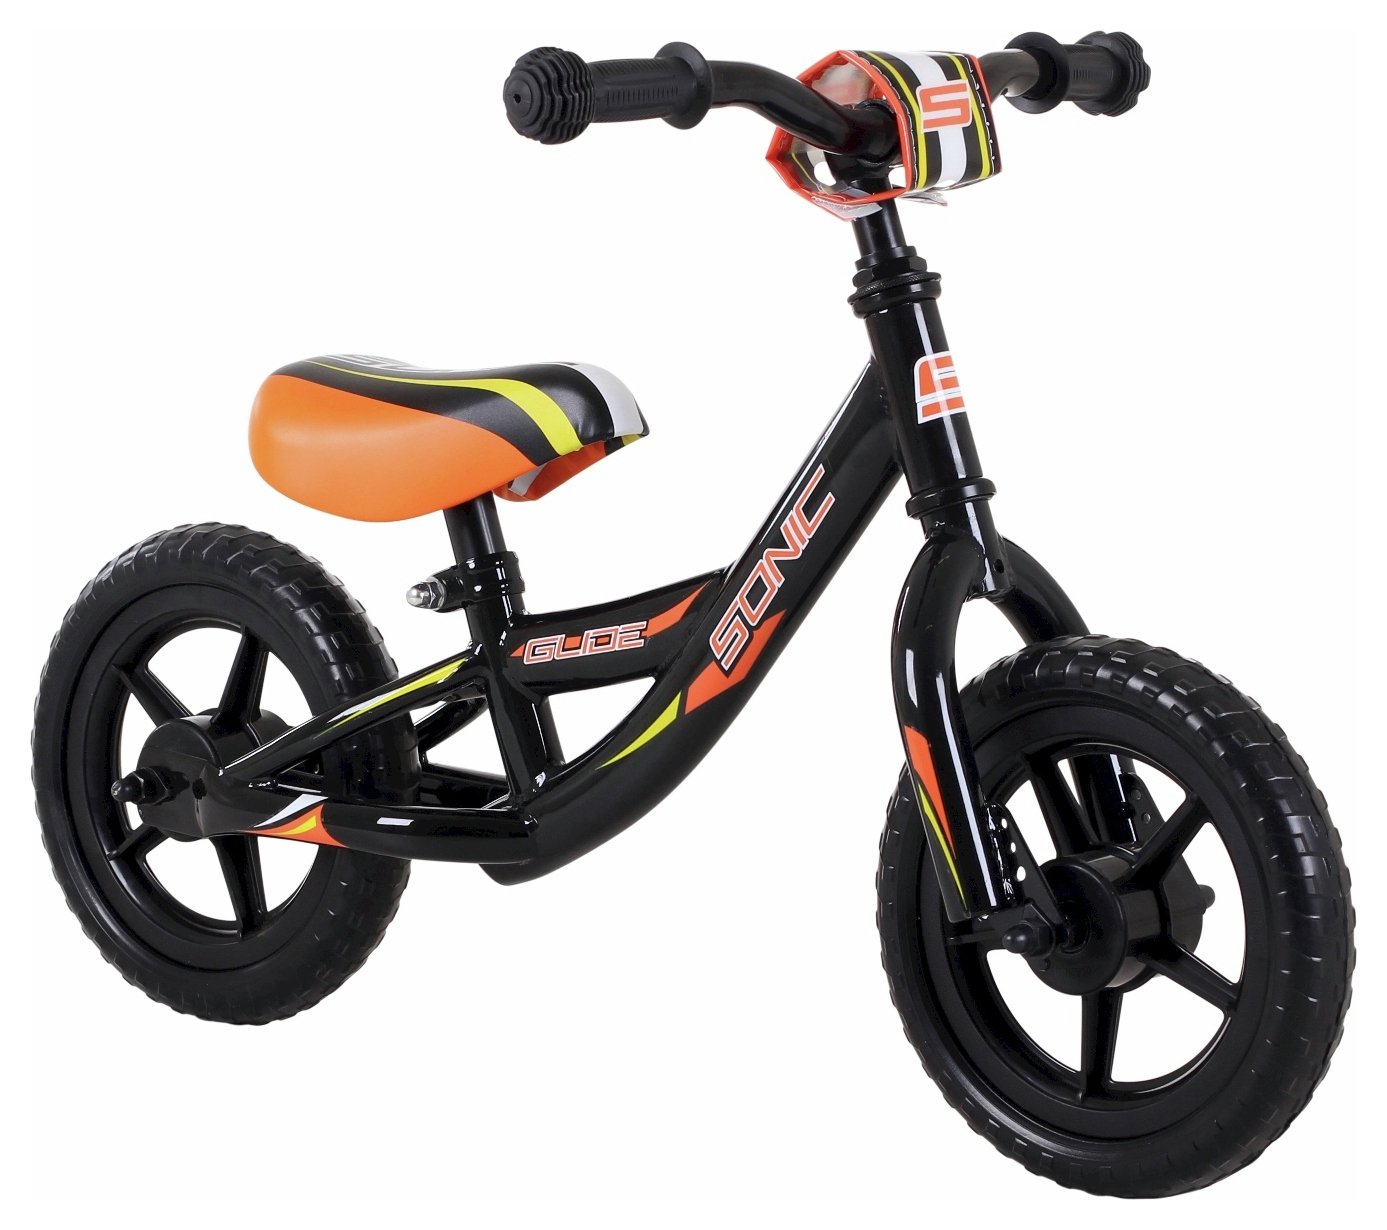 argos toys balance bikes